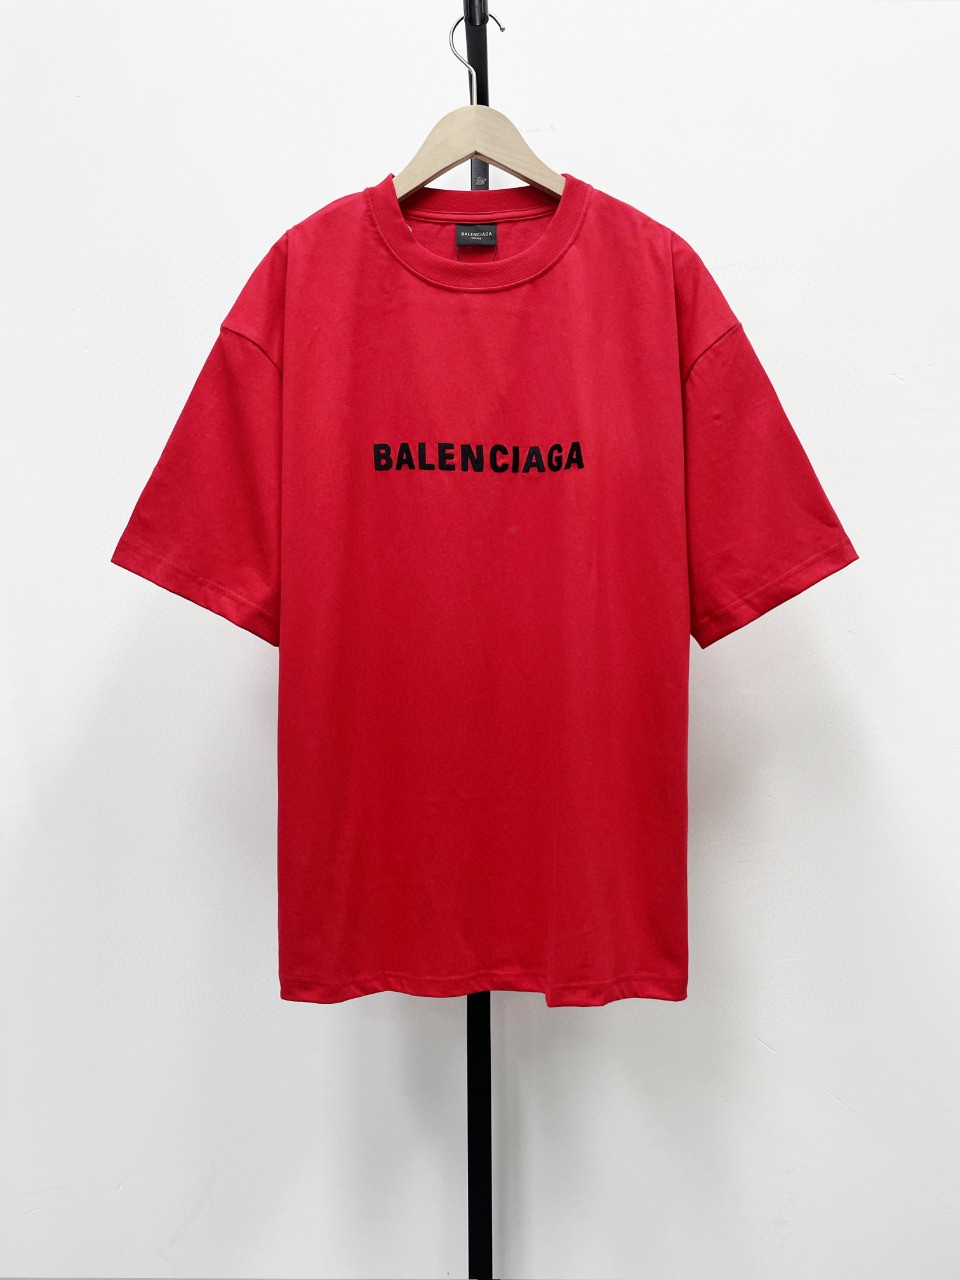 バレンシアガ半袖Tシャツコピーコットン製人気物刺繍ロゴ_1